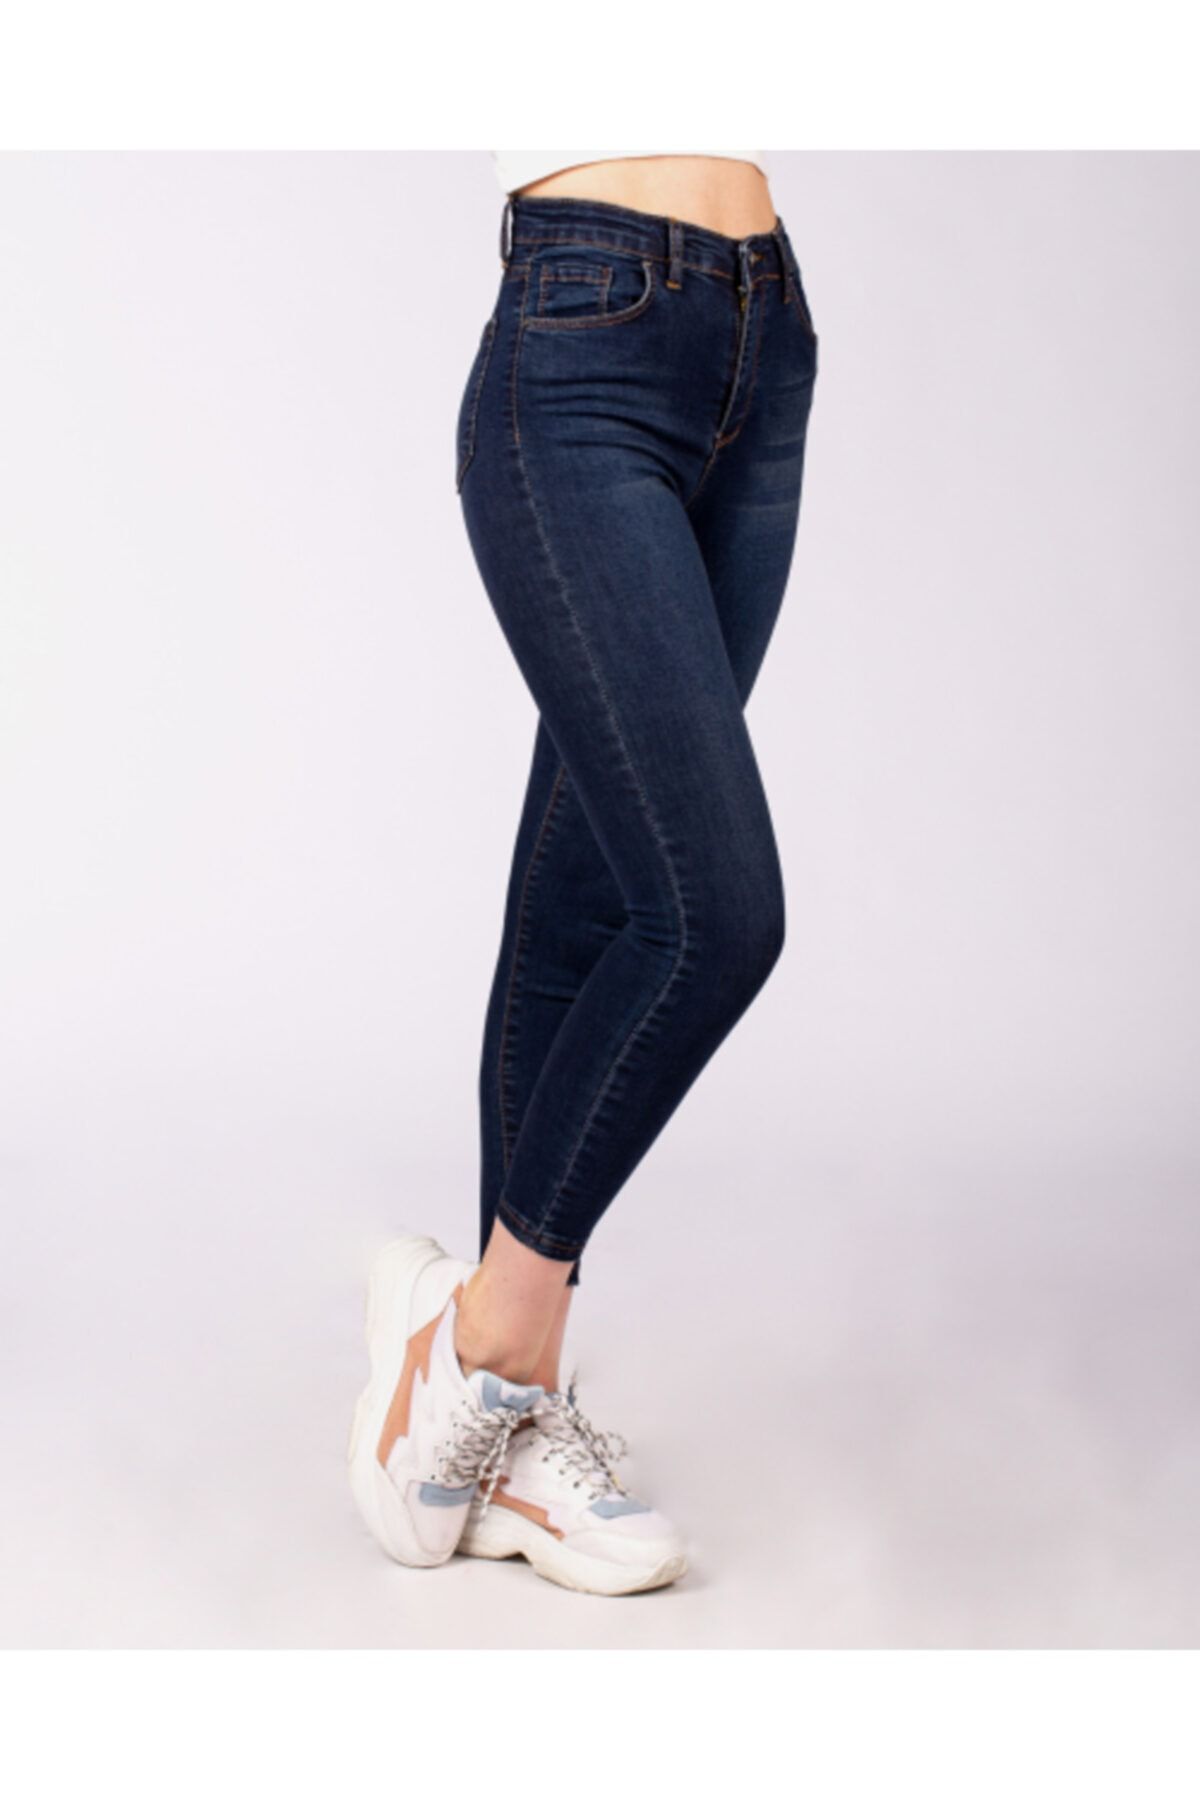 ODL Jeans Kadın Lacivert Yüksek Bel Dar Paça Jean Pantolon